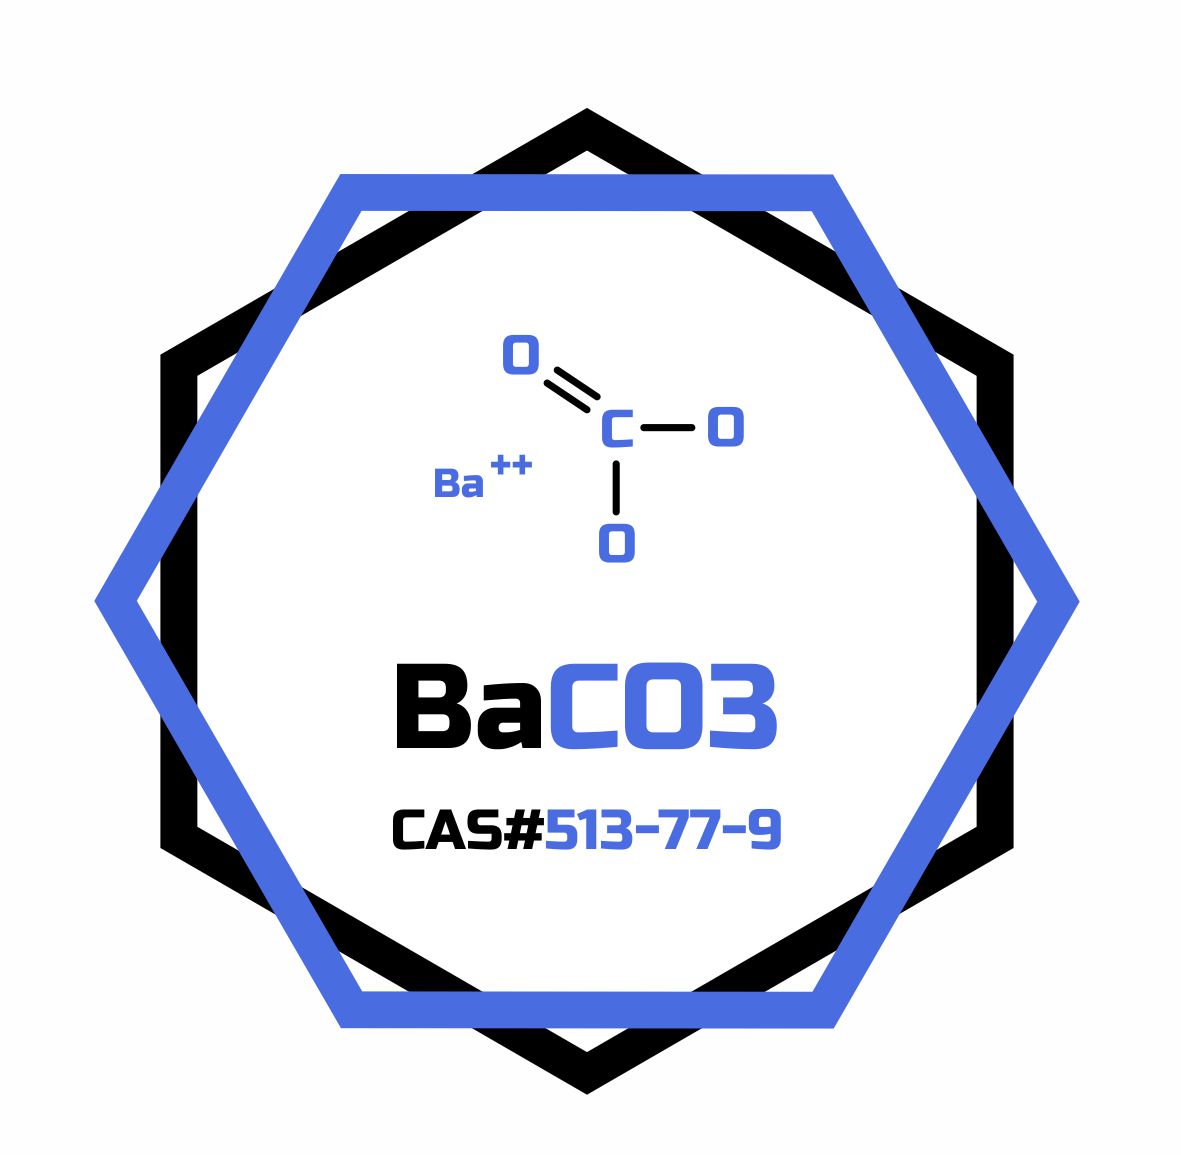 Barium Carbonate 99% ACS Reagent, CAS 513-77-9